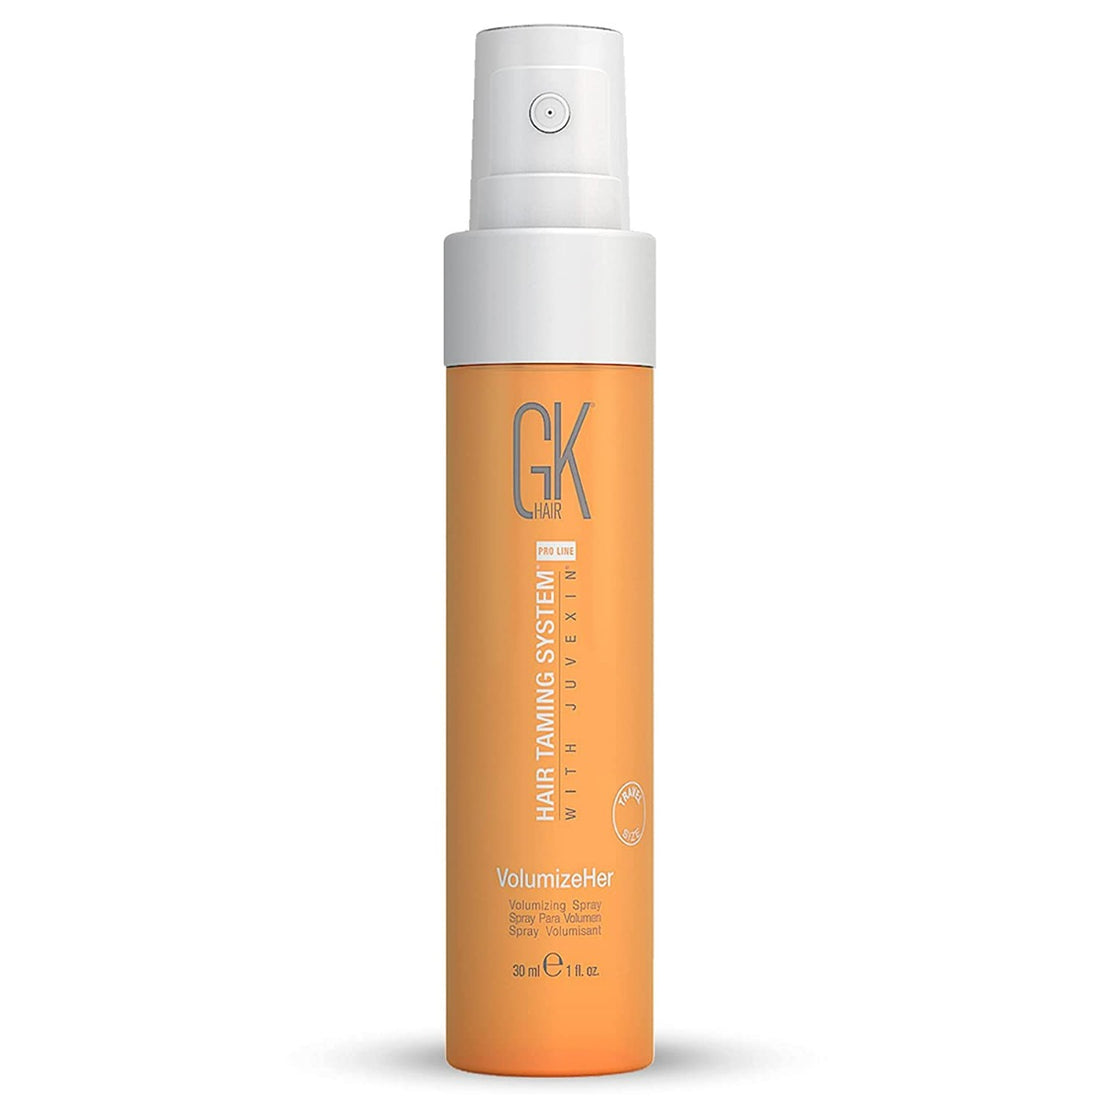 Gk Hair Volumize Hair Spray (30ml)